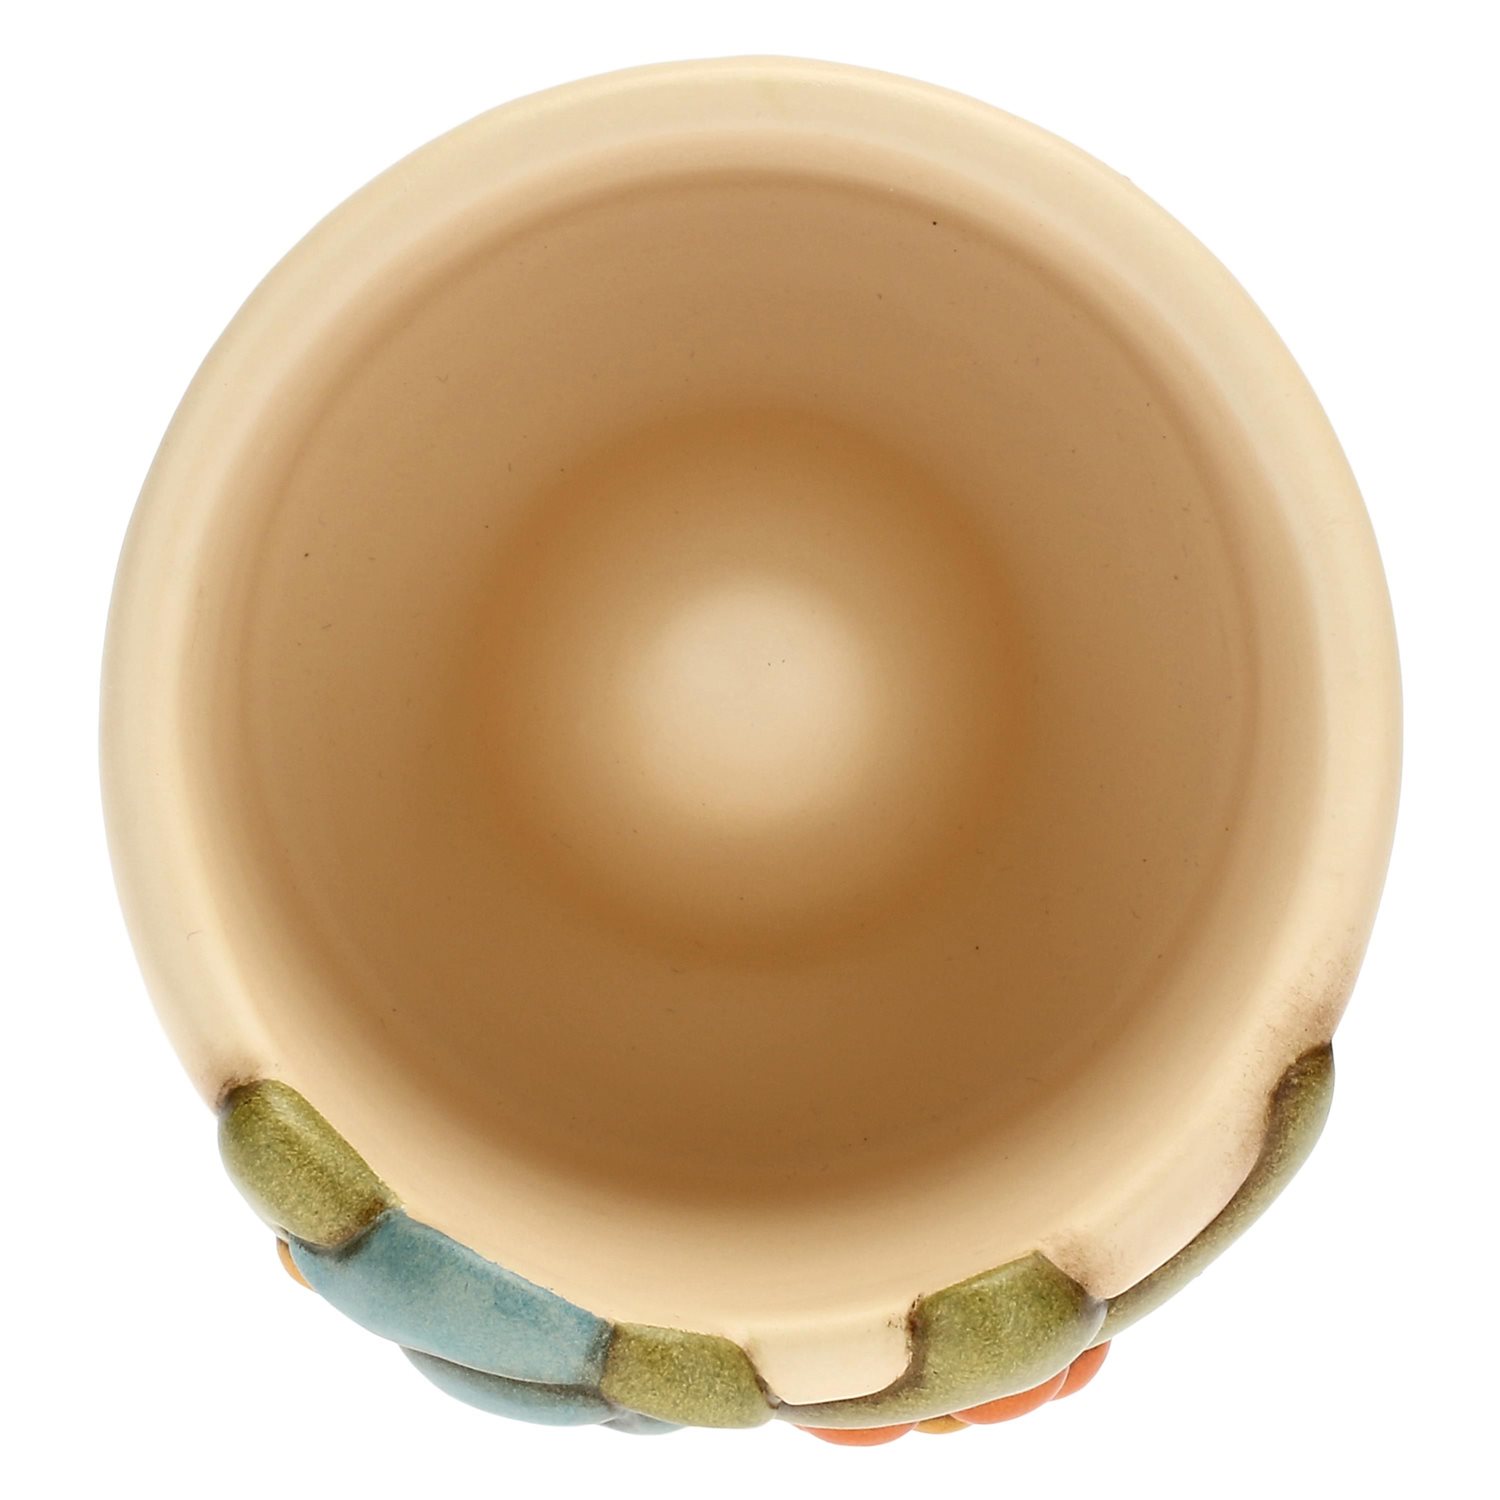 Oiritaly Portagioie - Thun - P3703P00 - Ceramica